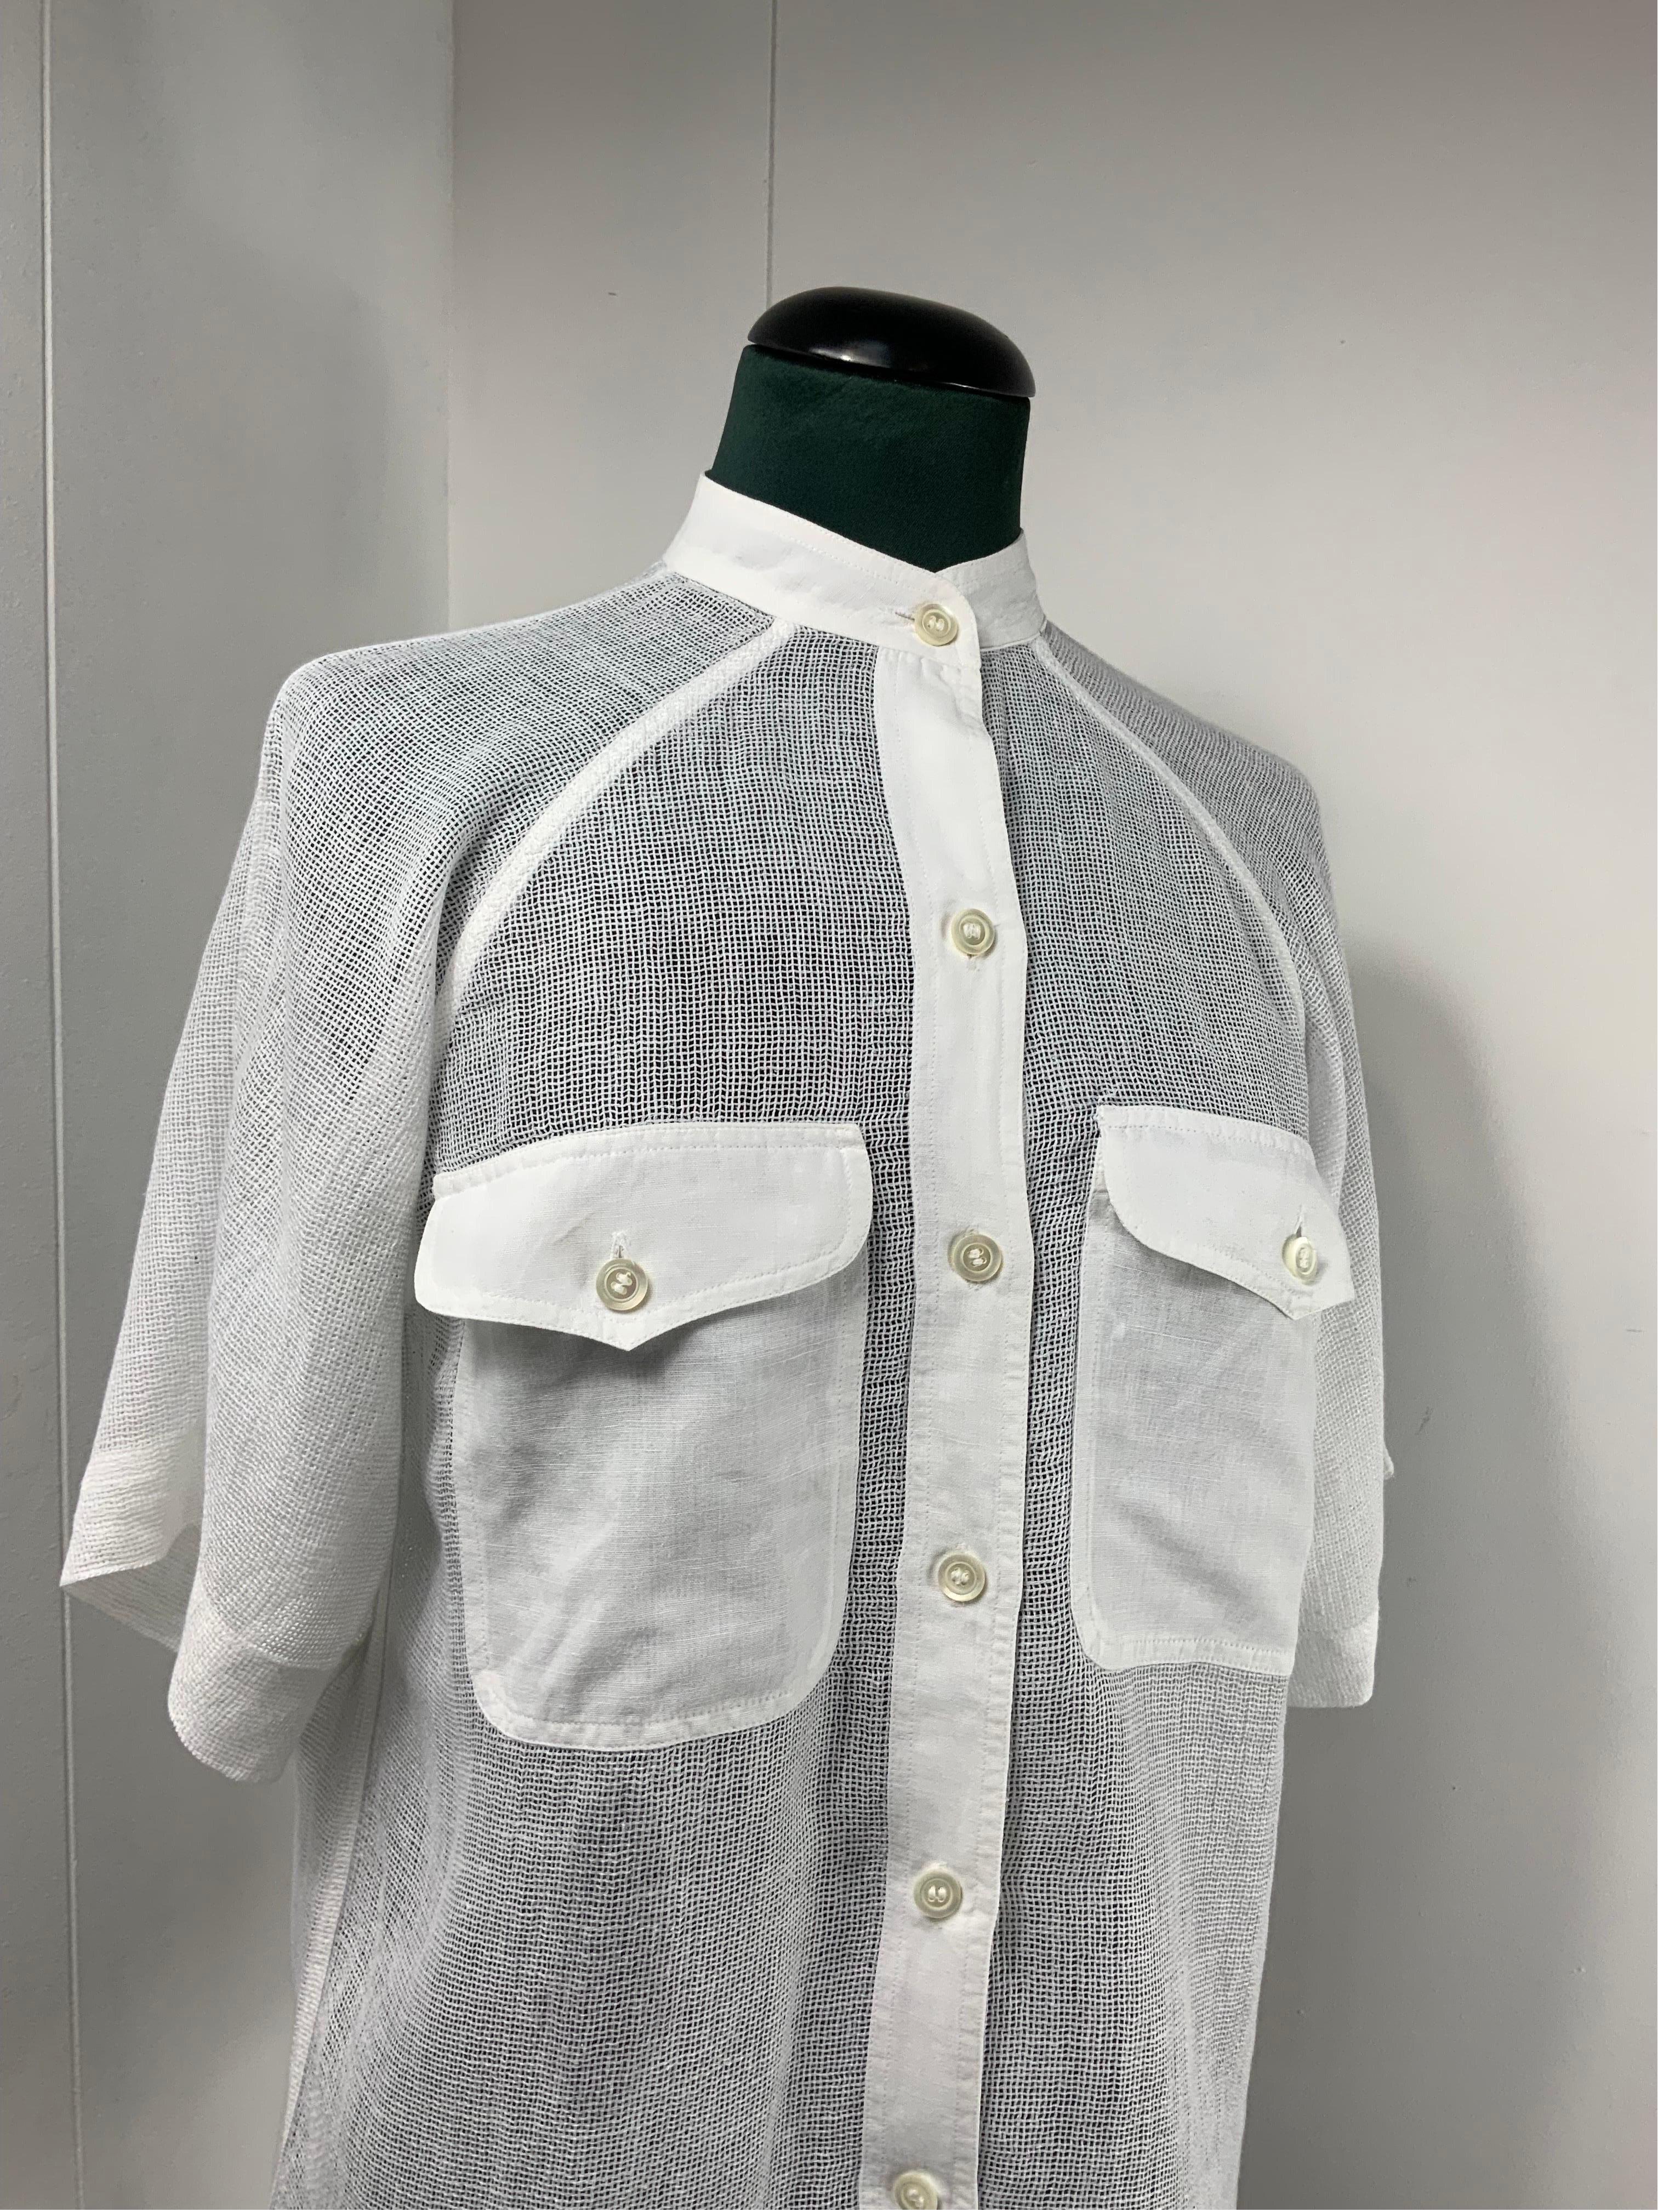 Women's or Men's Yves Saint Laurent Vintage Shirt